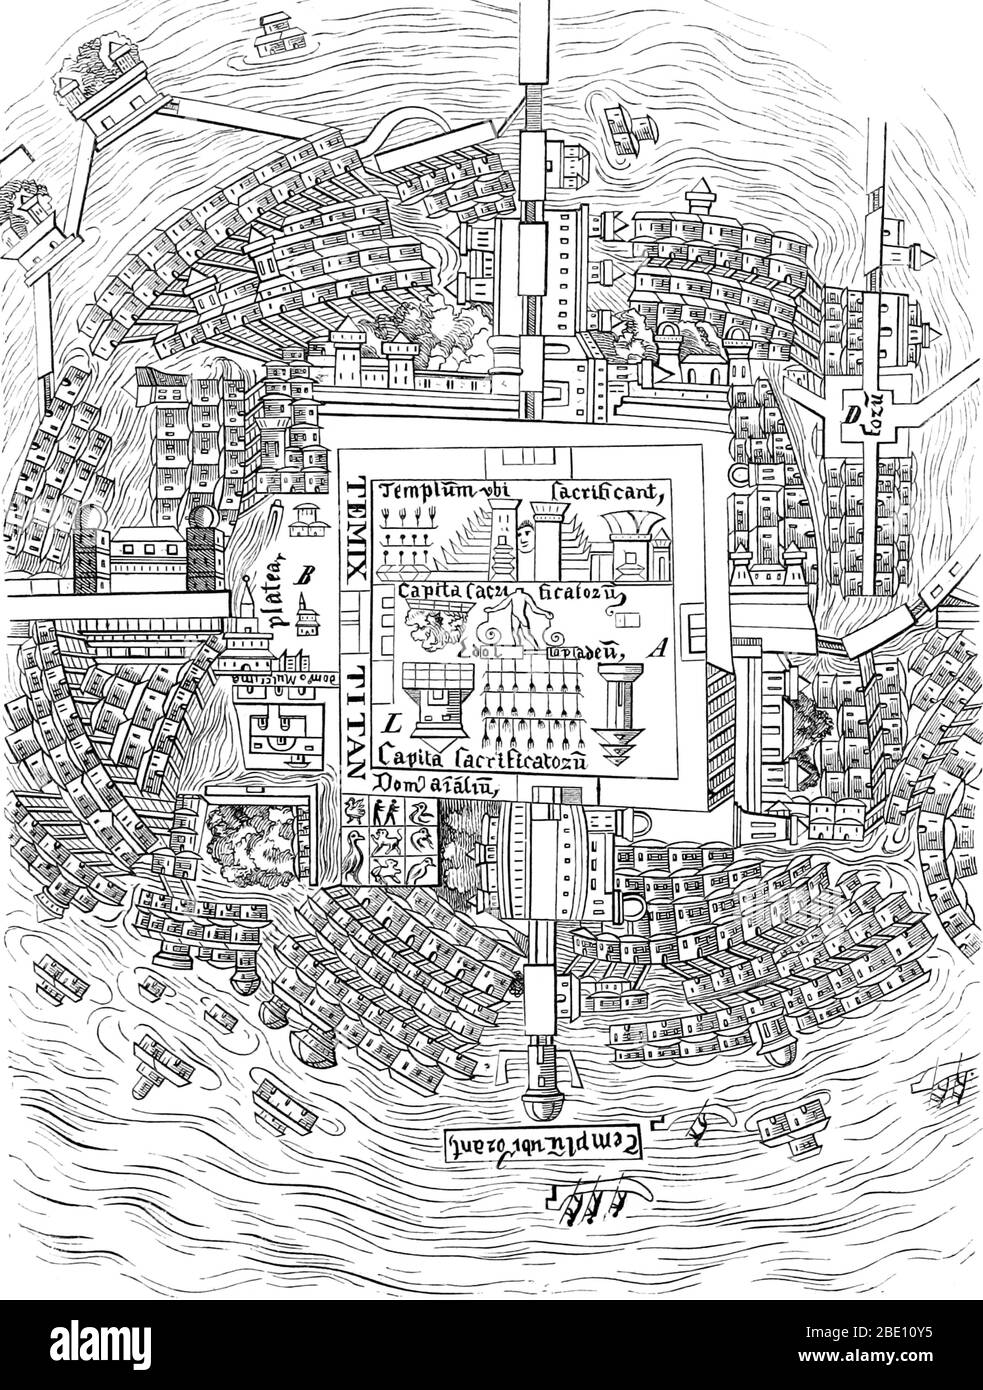 Il Messico-Tenochtitlan, comunemente conosciuto come Tenochtitlan, era un altepetl azteco (città-stato) situato su un'isola nel lago Texcoco, nella Valle del Messico. Fondata nel 1325, si sviluppò una cultura fiorente, e la civiltà messicana venne a dominare altre tribù intorno al Messico. La piccola isola naturale fu continuamente ampliata, mentre Tenochtitlan crebbe diventando la città più grande e potente di Mesoamerica. La città era collegata alla terraferma da strade che portavano a nord, sud e ovest. Le strade di collegamento erano interrotte da ponti che consentivano alle canoe e ad altri traffici di passare liberamente. Il ponte Foto Stock